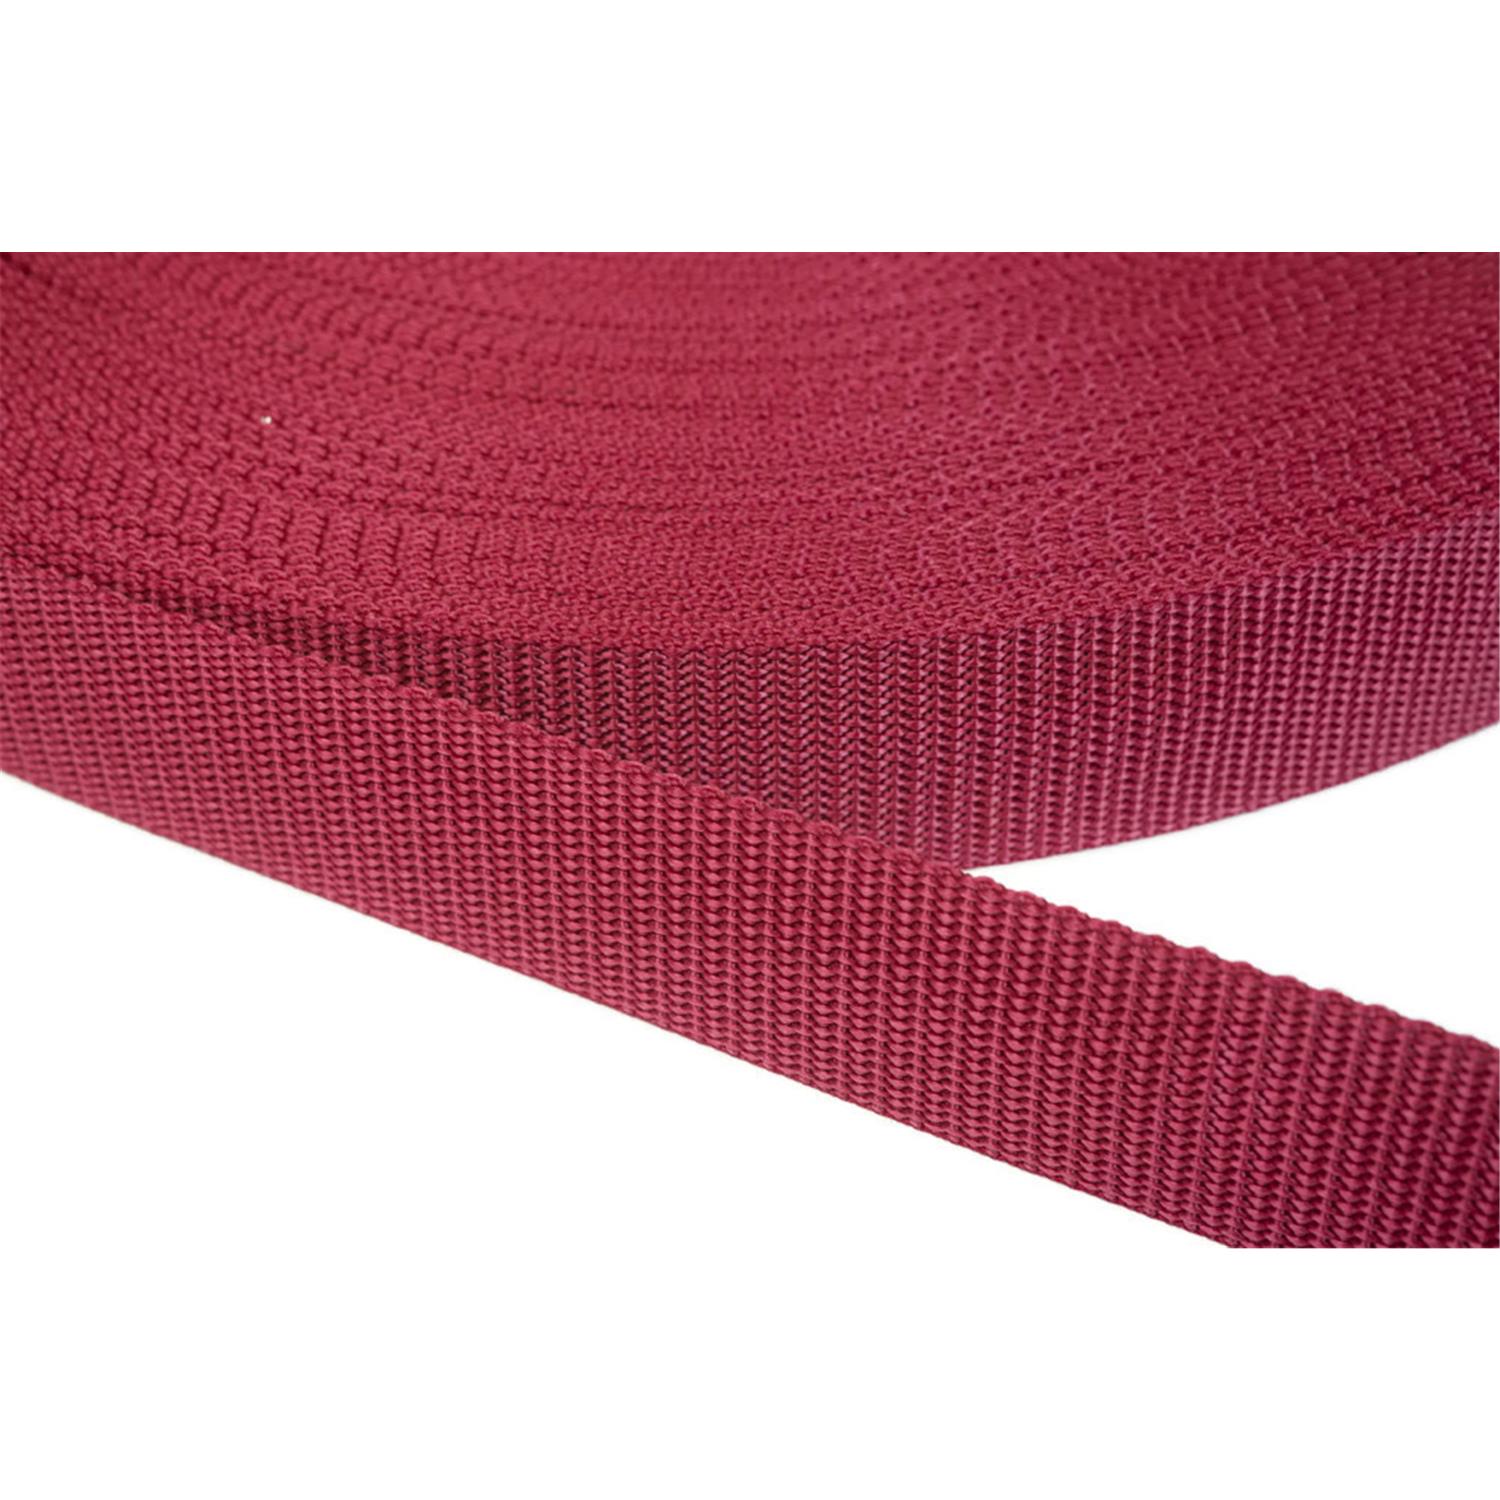 Gurtband 50mm breit aus Polypropylen in 41 Farben 20 - ziegelrot 6 Meter